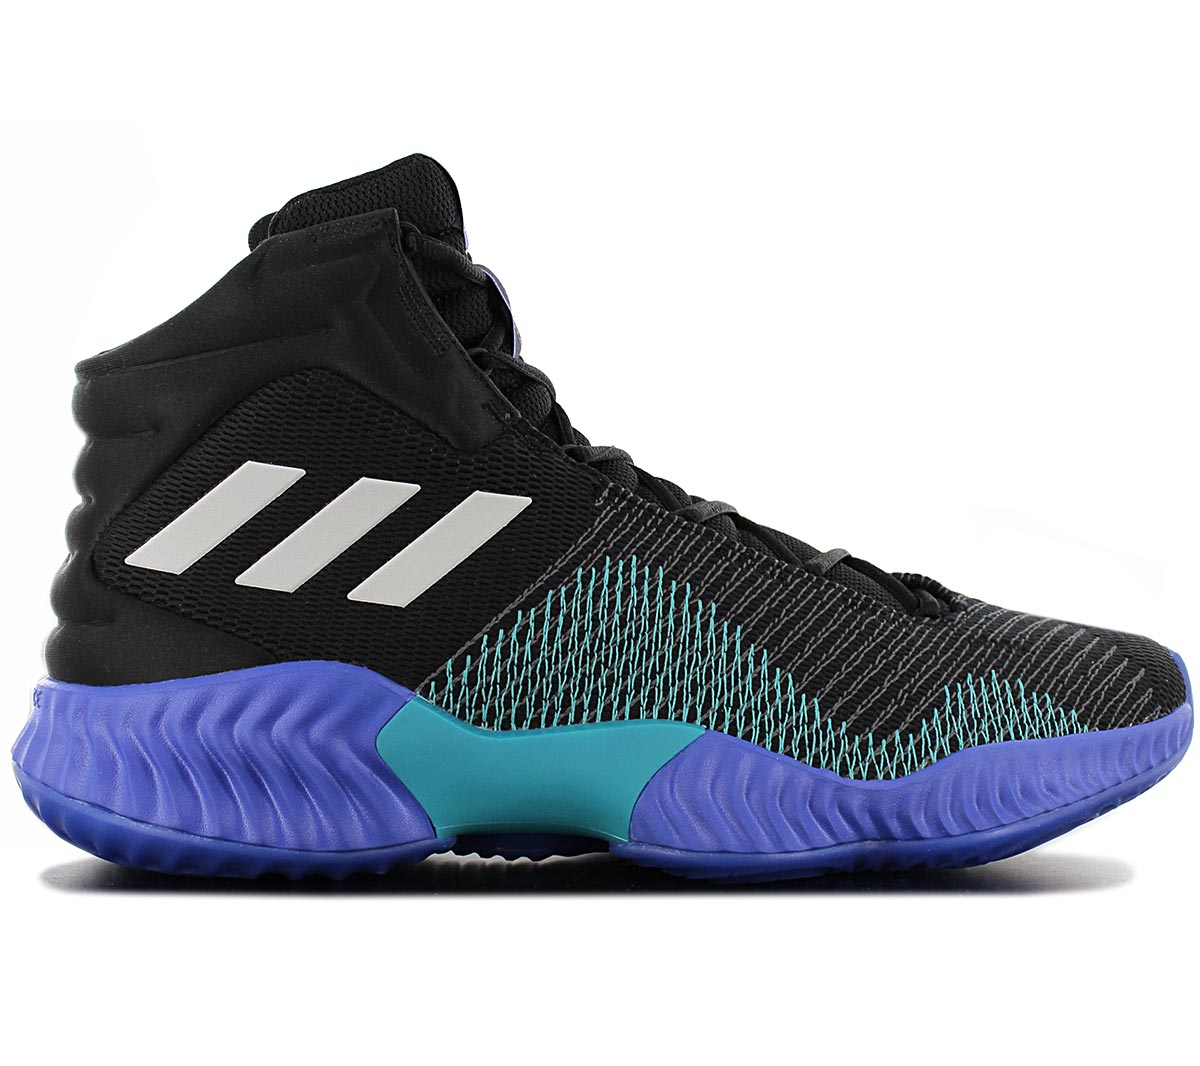 Adidas Pro Bounce 2018 para hombres zapatos de baloncesto NUEVOS Zapatos  Zapatillas de deportes AH2657 | eBay